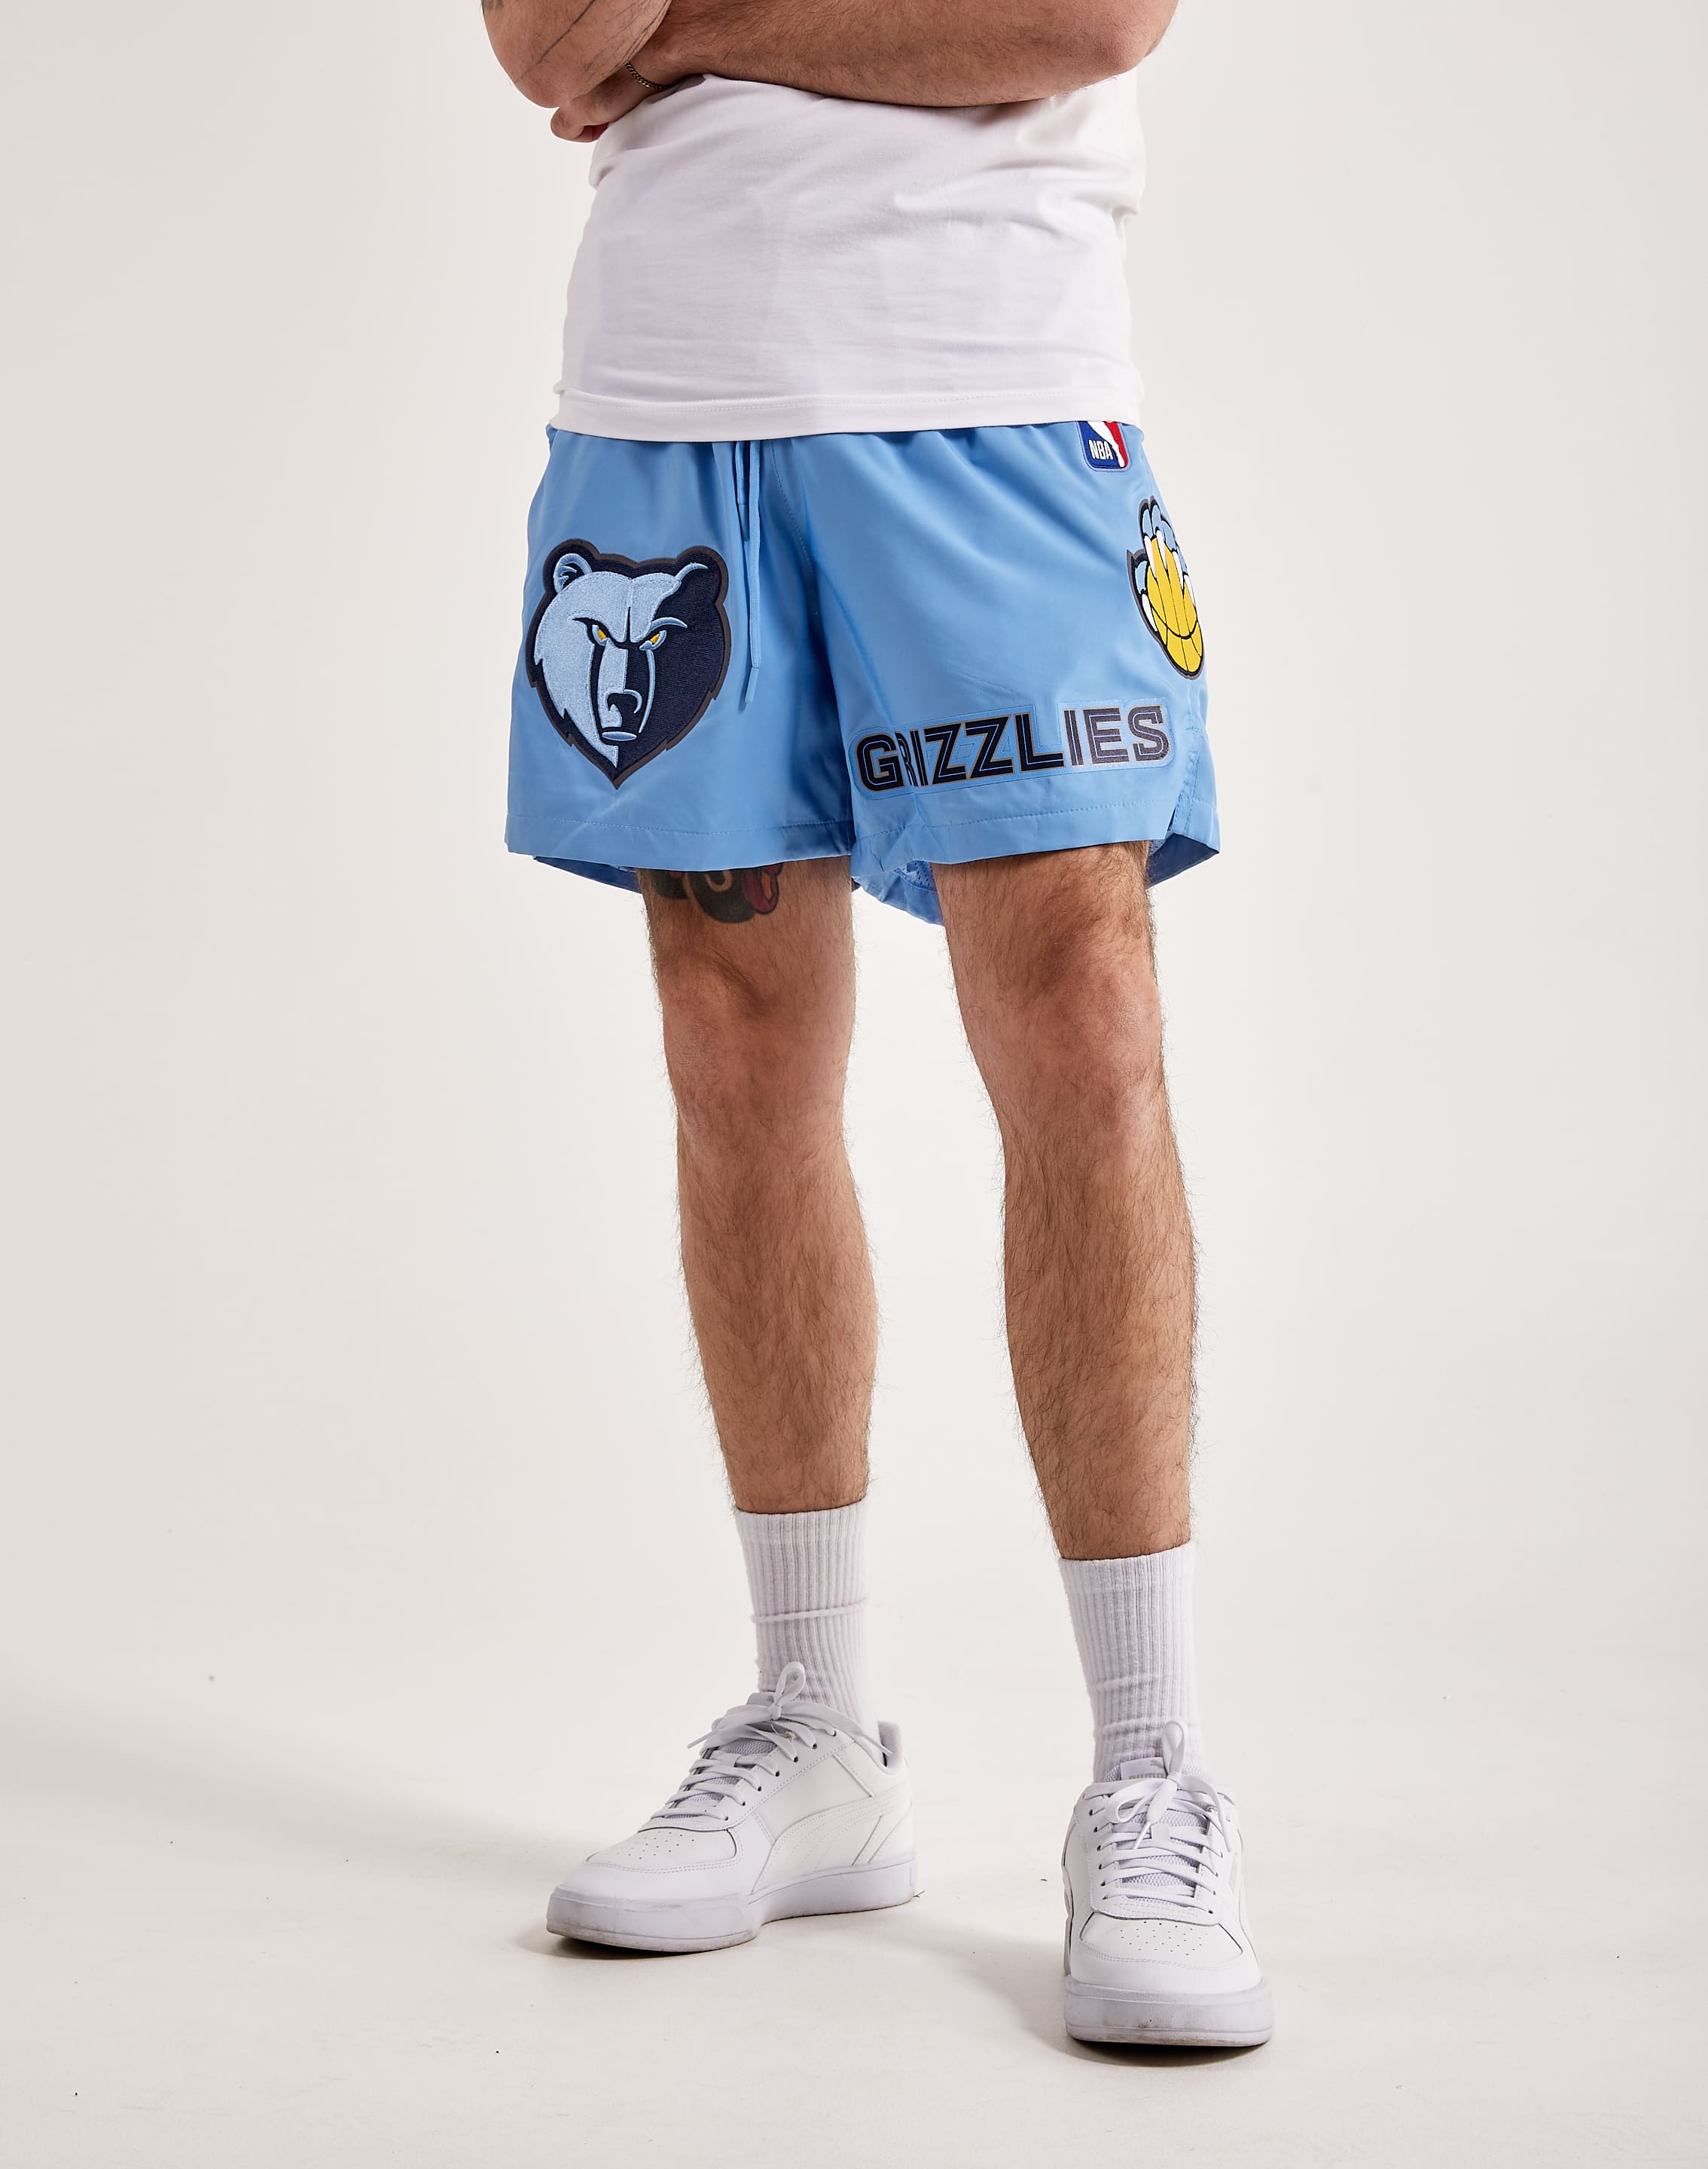 Memphis Grizzlies NBA Pants for sale